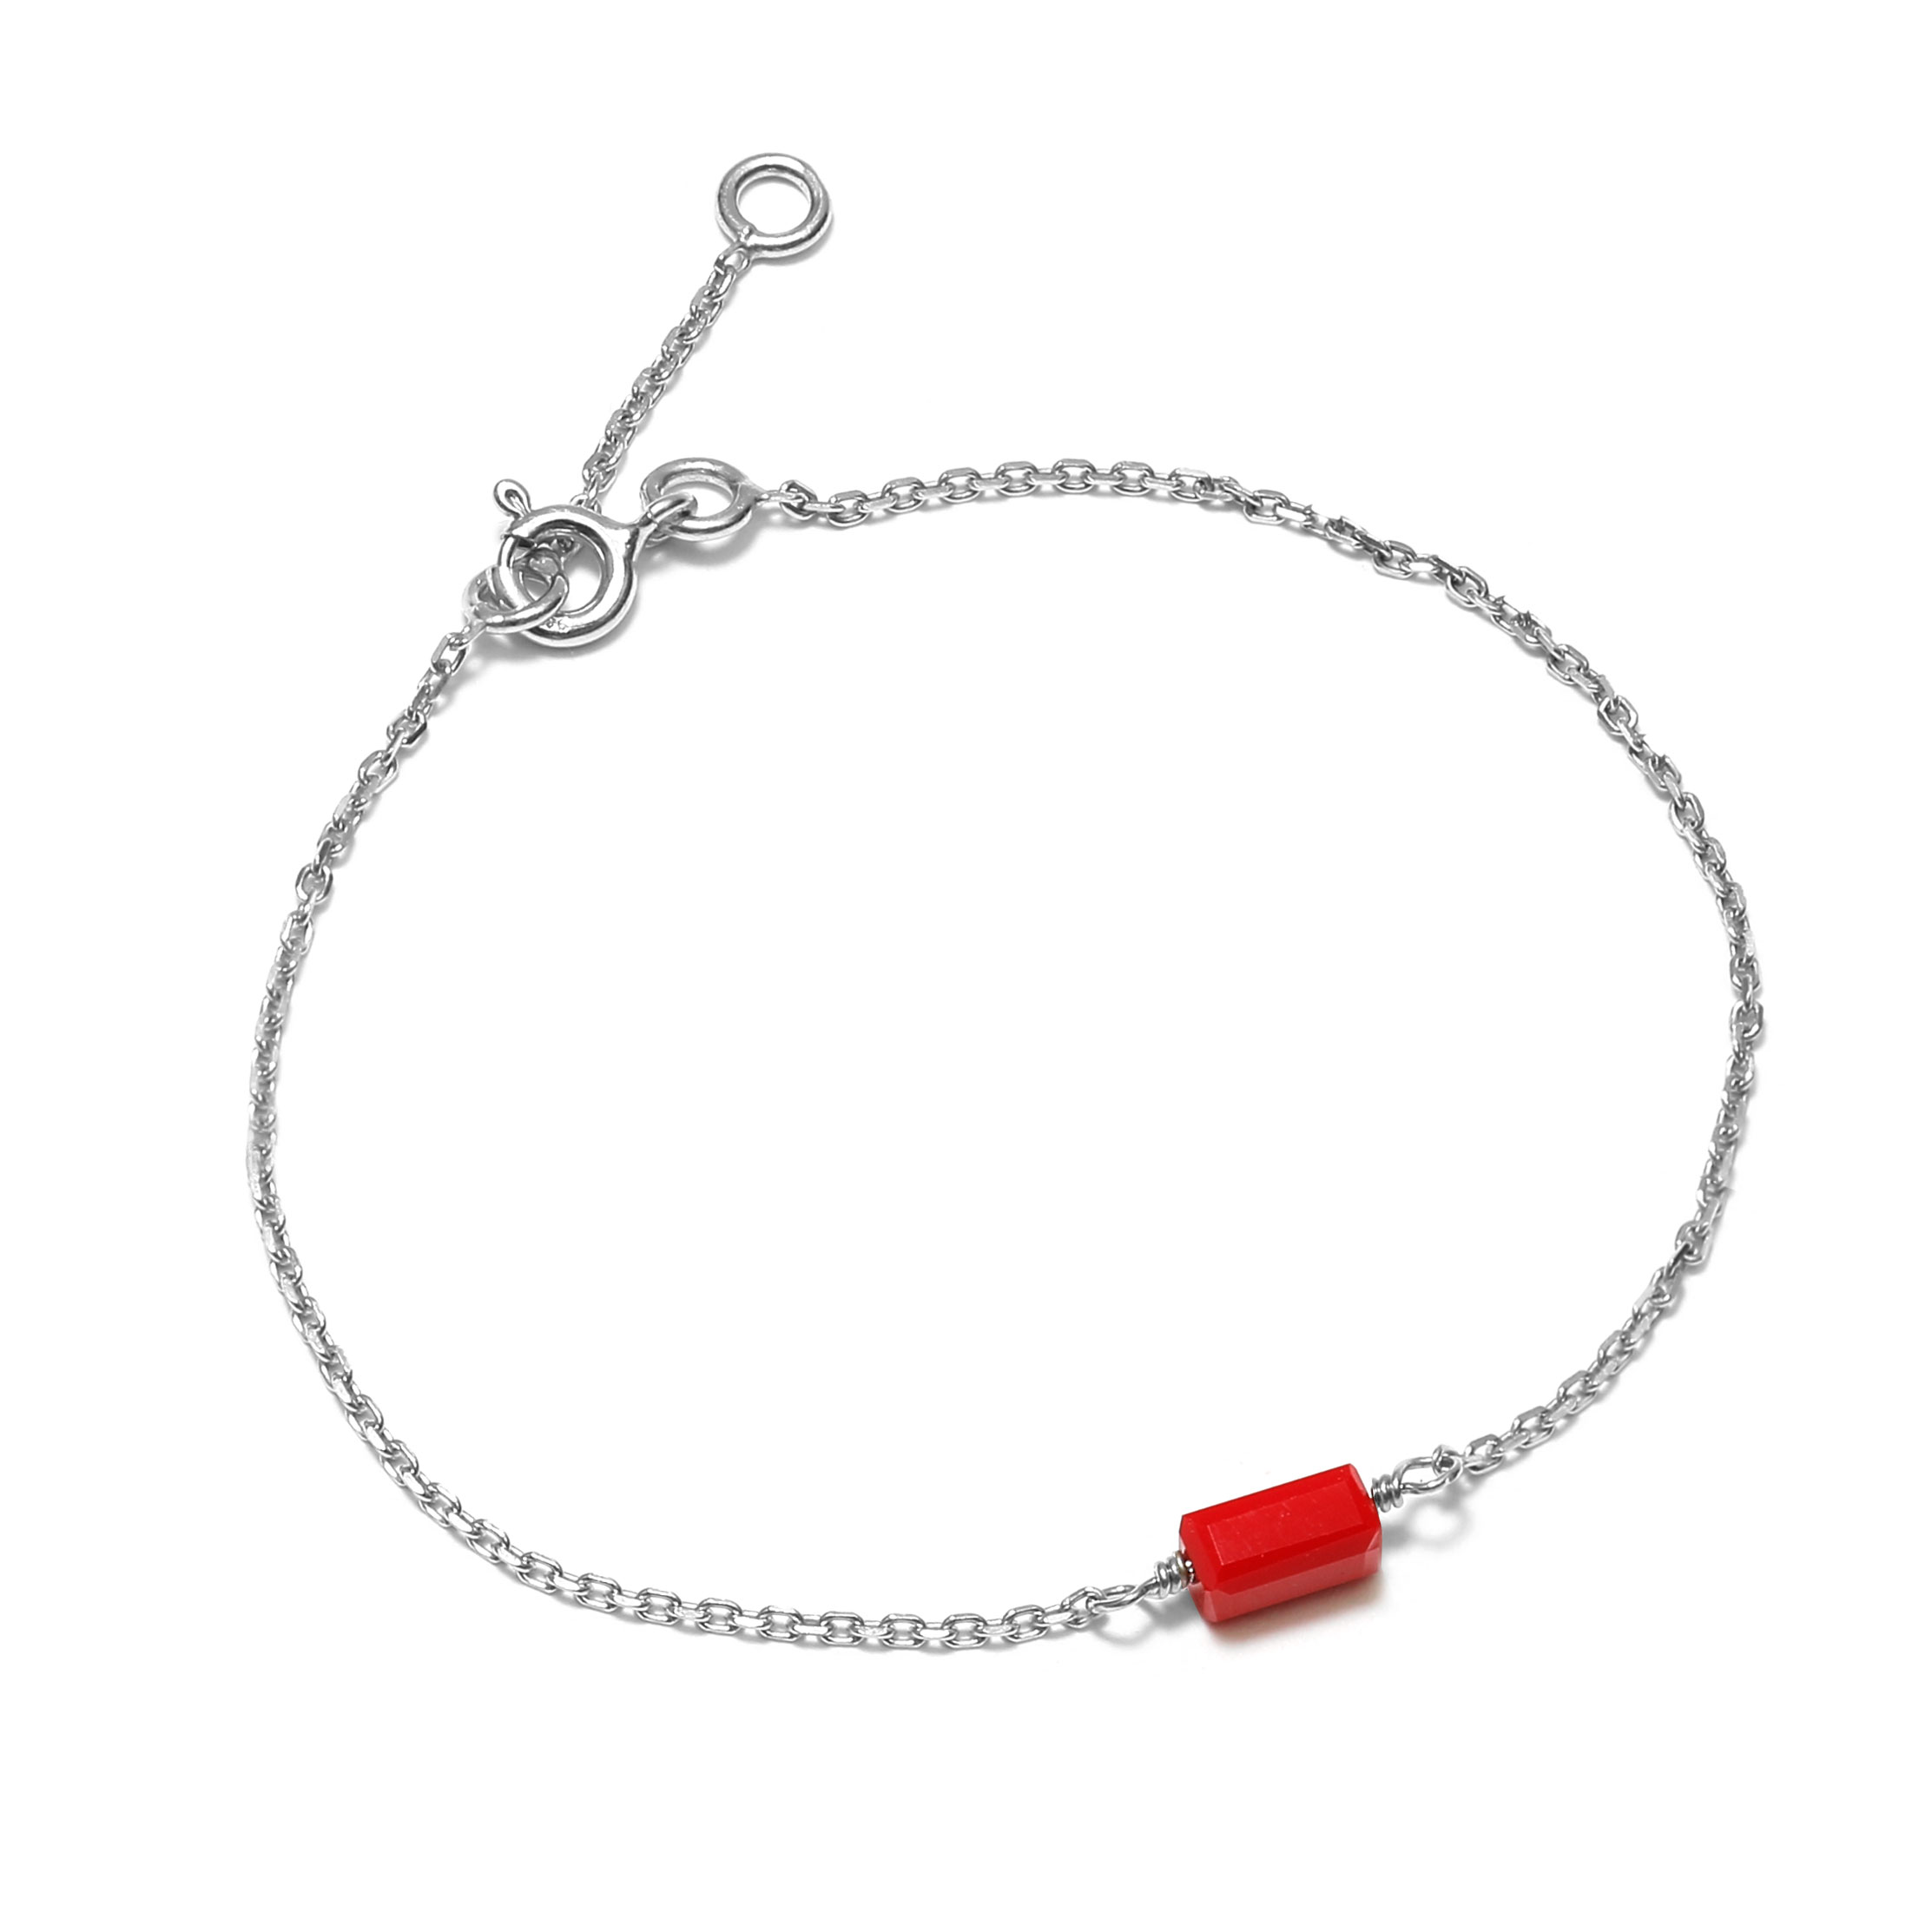 Bracelet en argent décorée dune pastille rectangulaire rouge